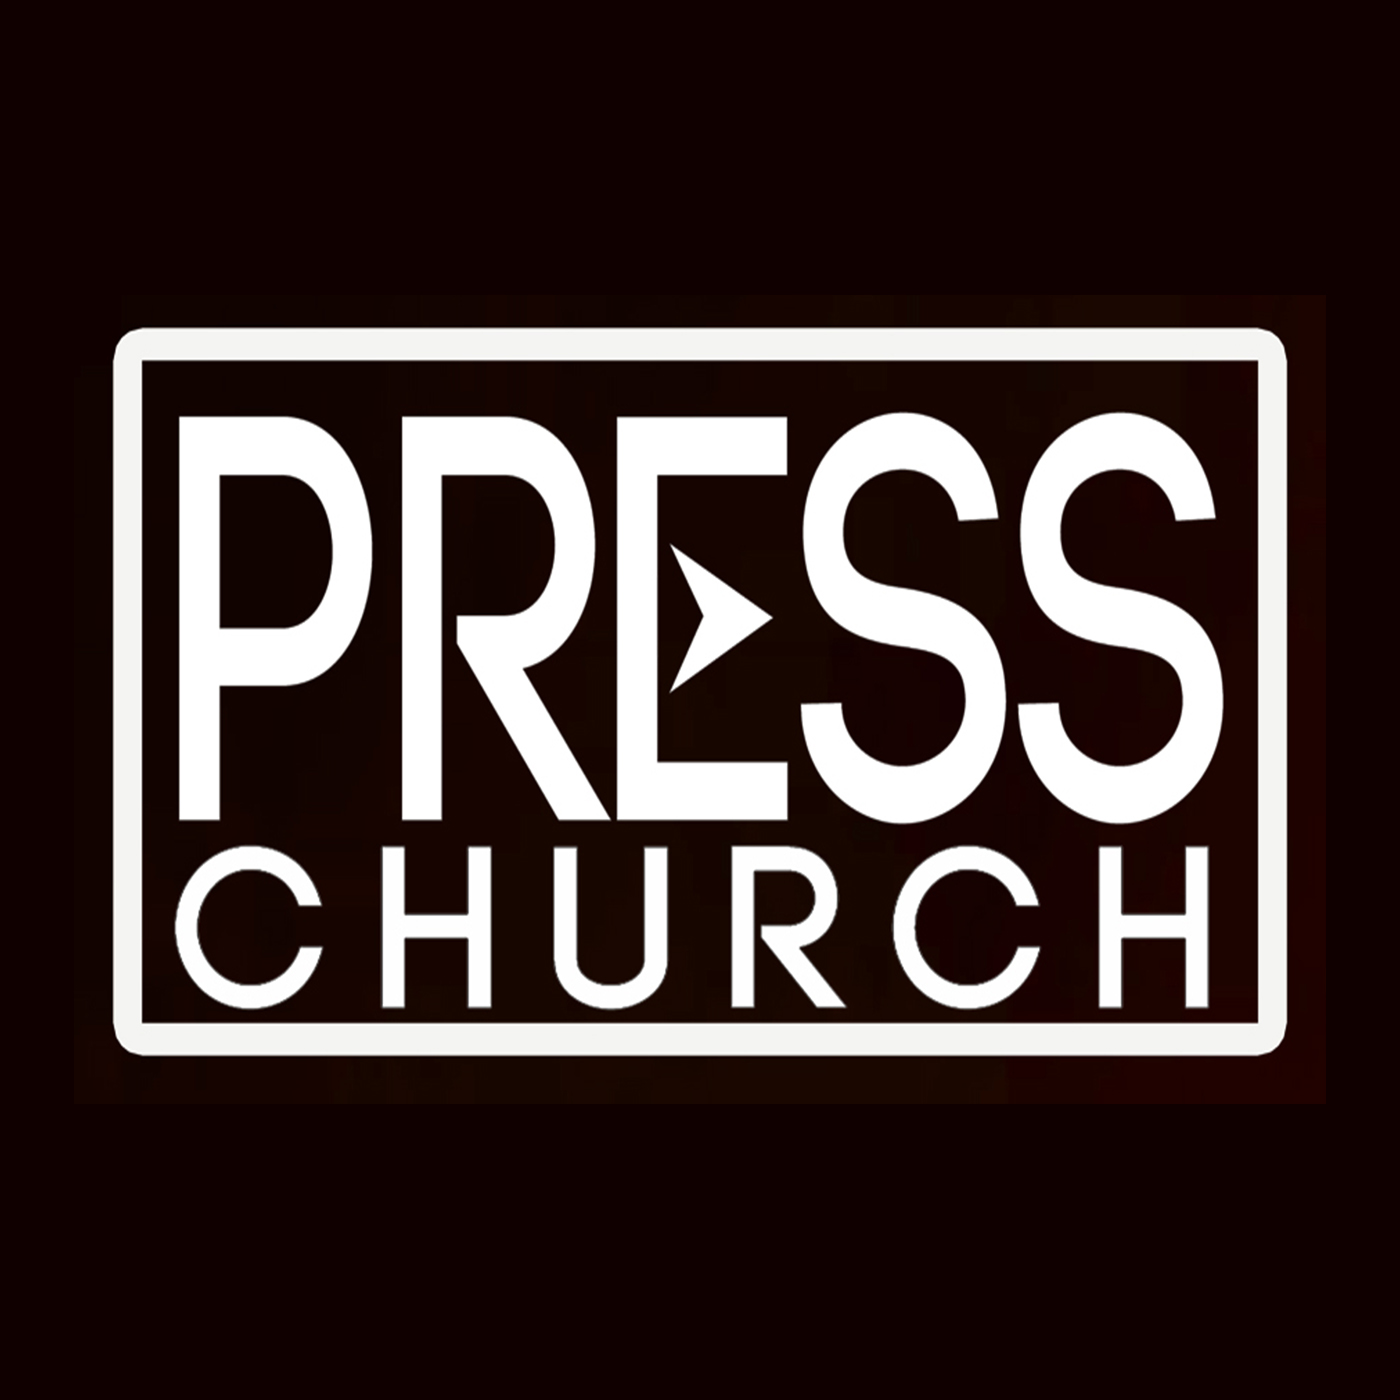 Press Church